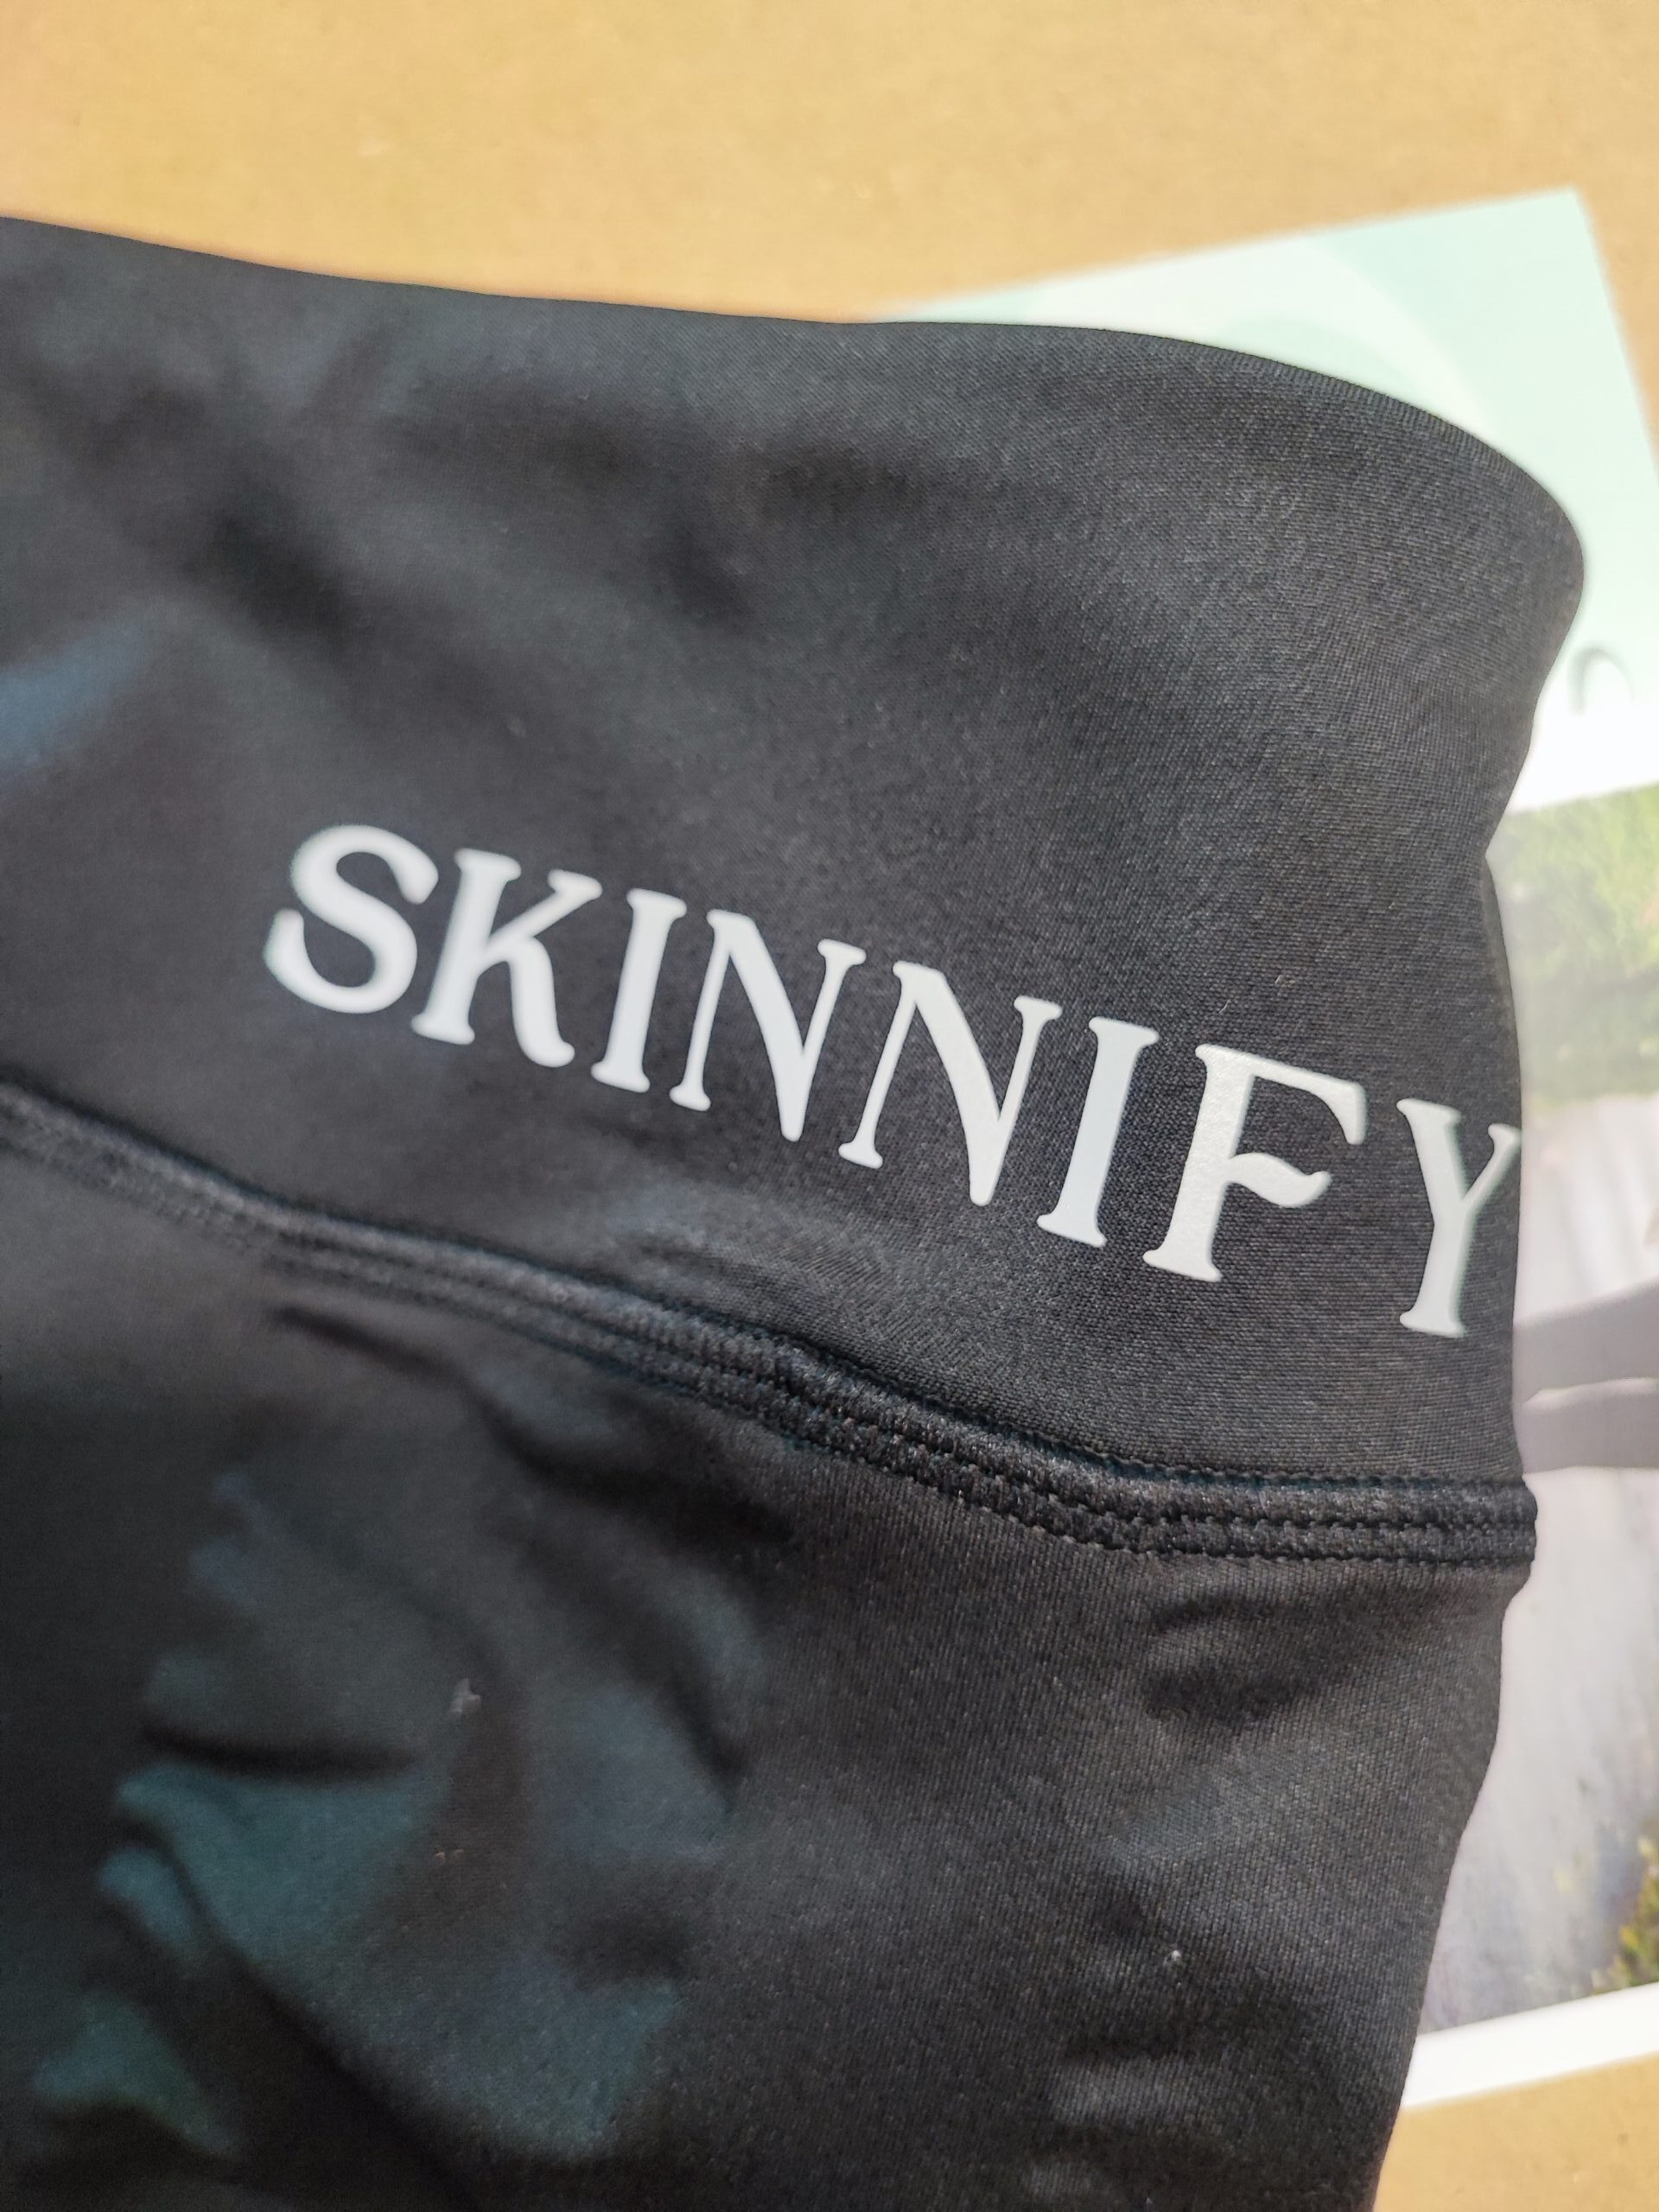 Skinnify Leggins Erfahrung